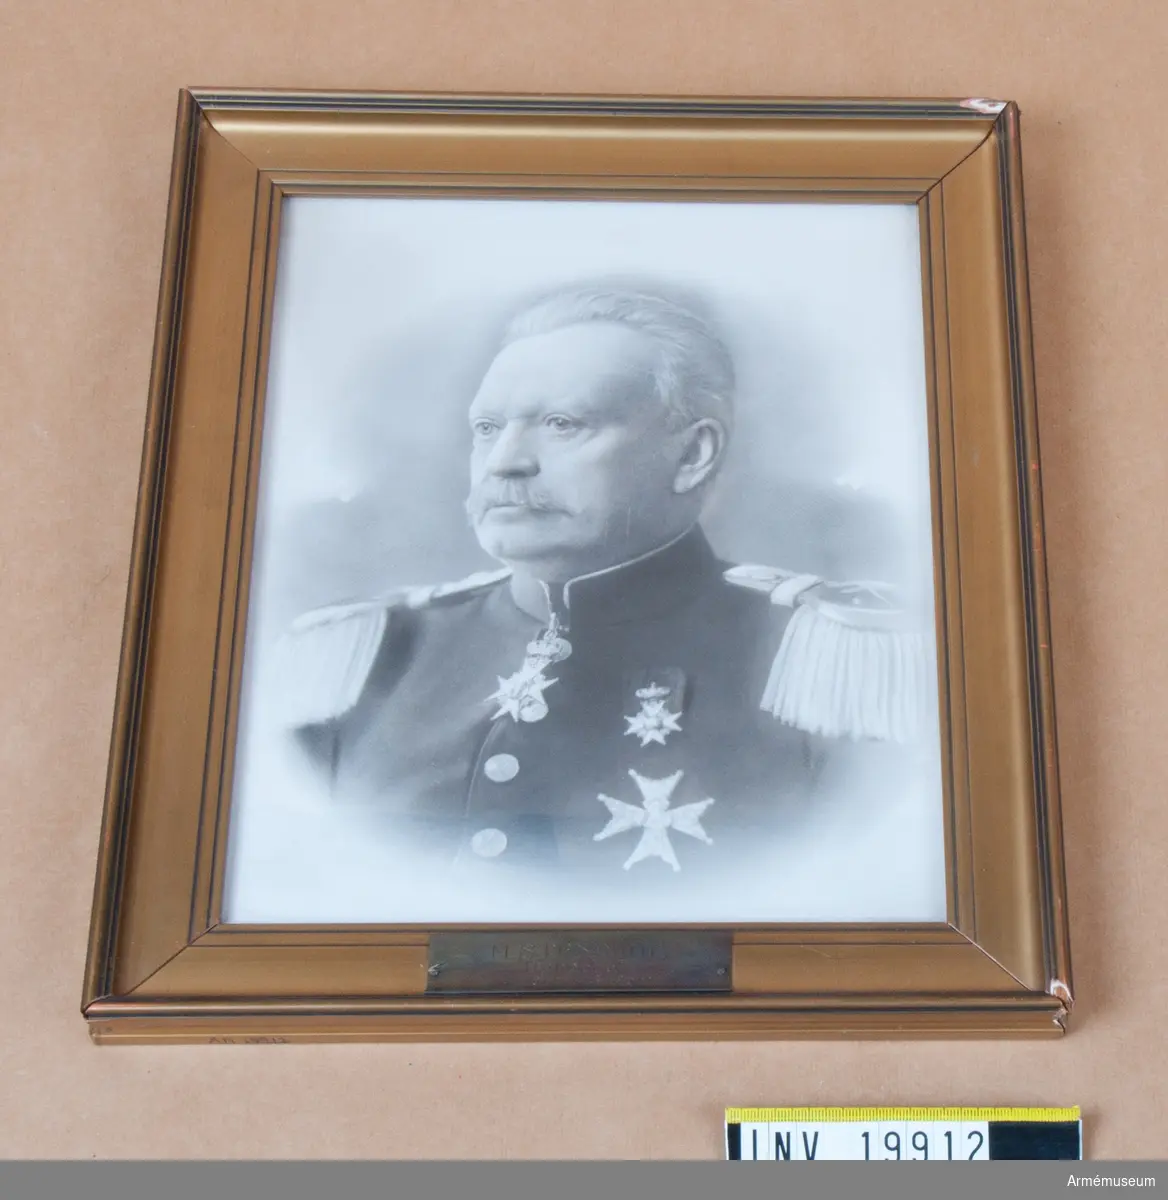 Fotografi föreställande byråchef M Stendahl (1900-01-09-1905-12-15).
Stendahl bär uniform m/ä, intendenturkåren, och tre st ordnar. 2 st mycket kantstötta hörn, 2 st mindre fula.